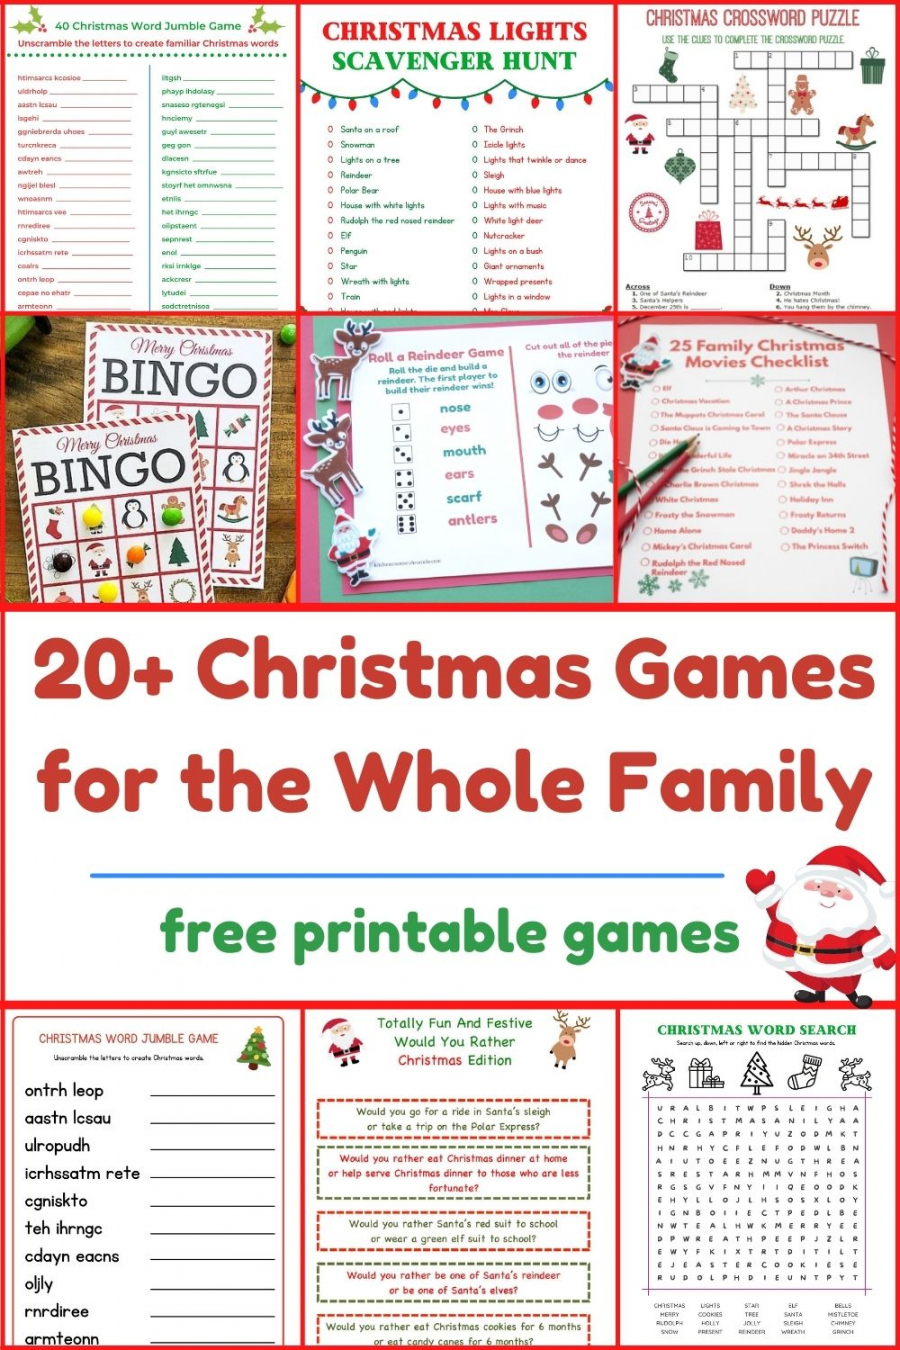 Free Christmas Games Printable - Printable - + Free Printable Christmas Games for the Whole Family